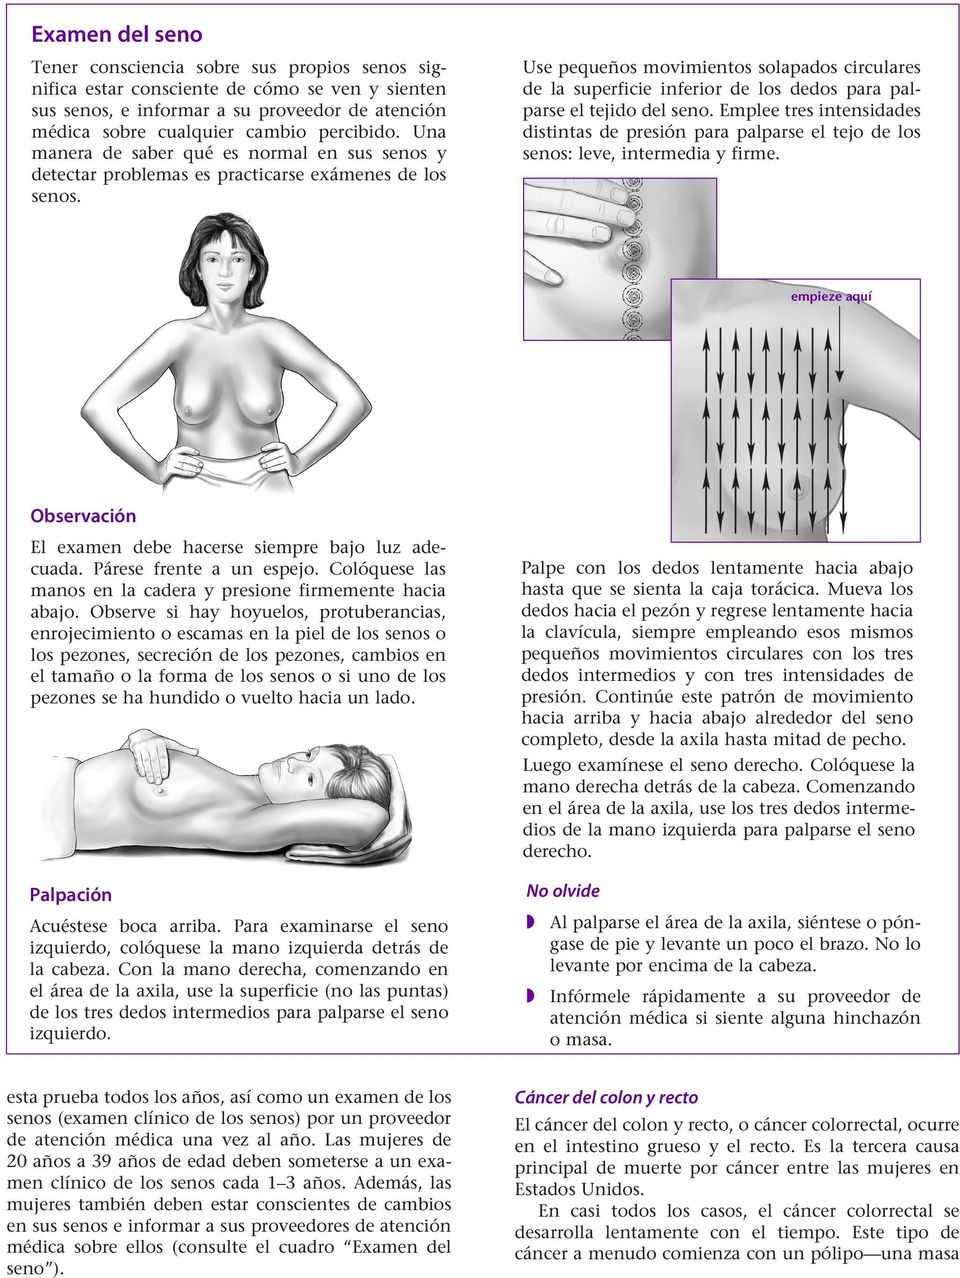 Use pequeños movimientos solapados circulares de la superficie inferior de los dedos para palparse el tejido del seno.